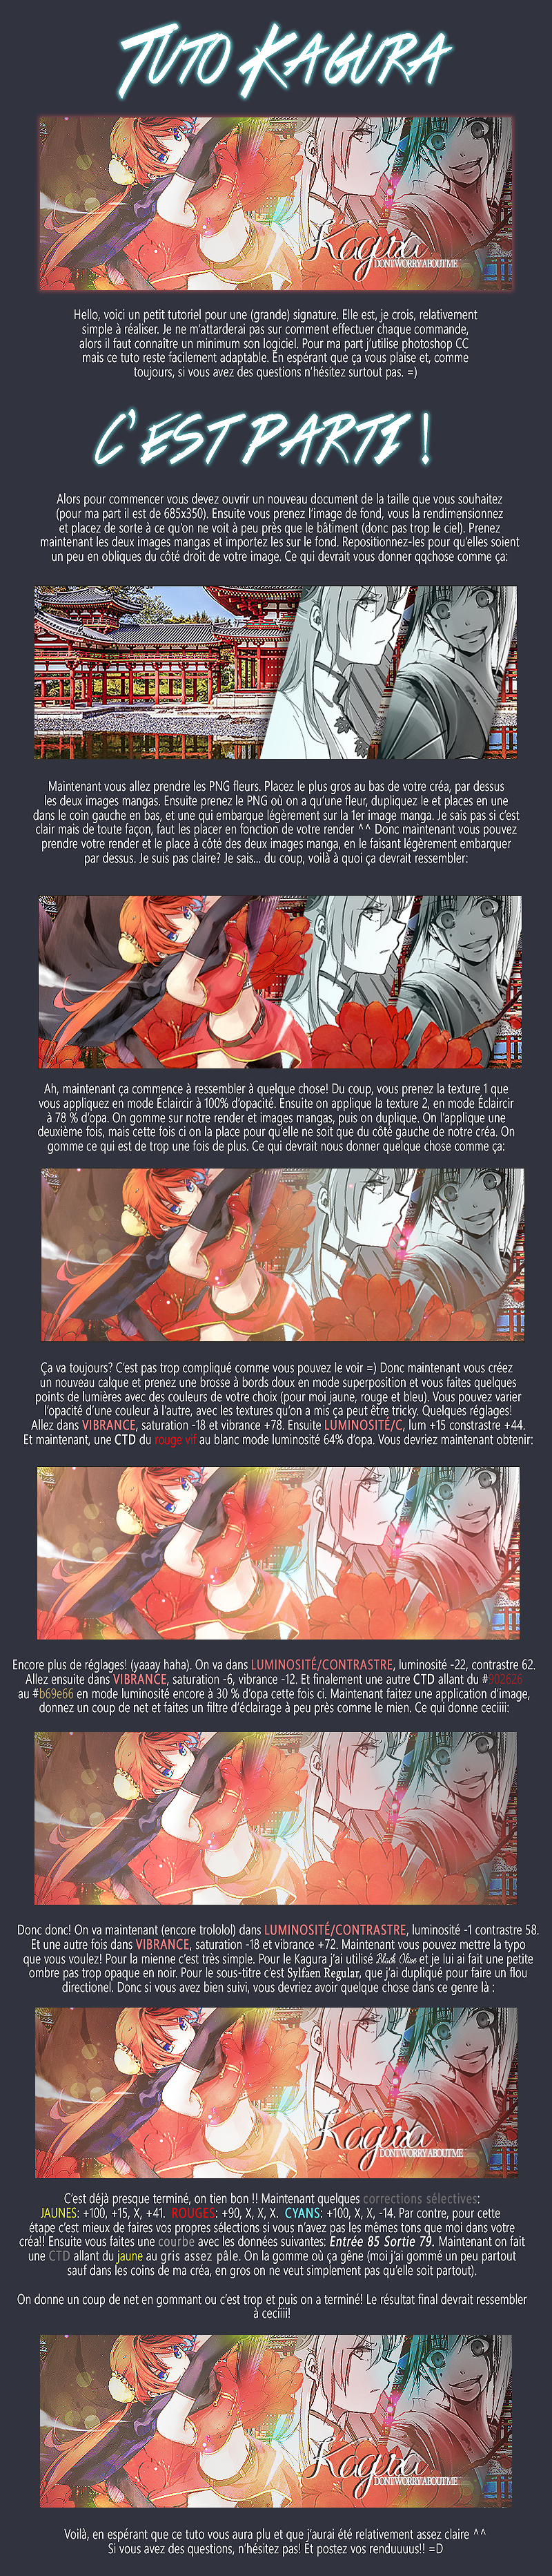 Tag 1 sur Manga-Fan - Page 2 Psma